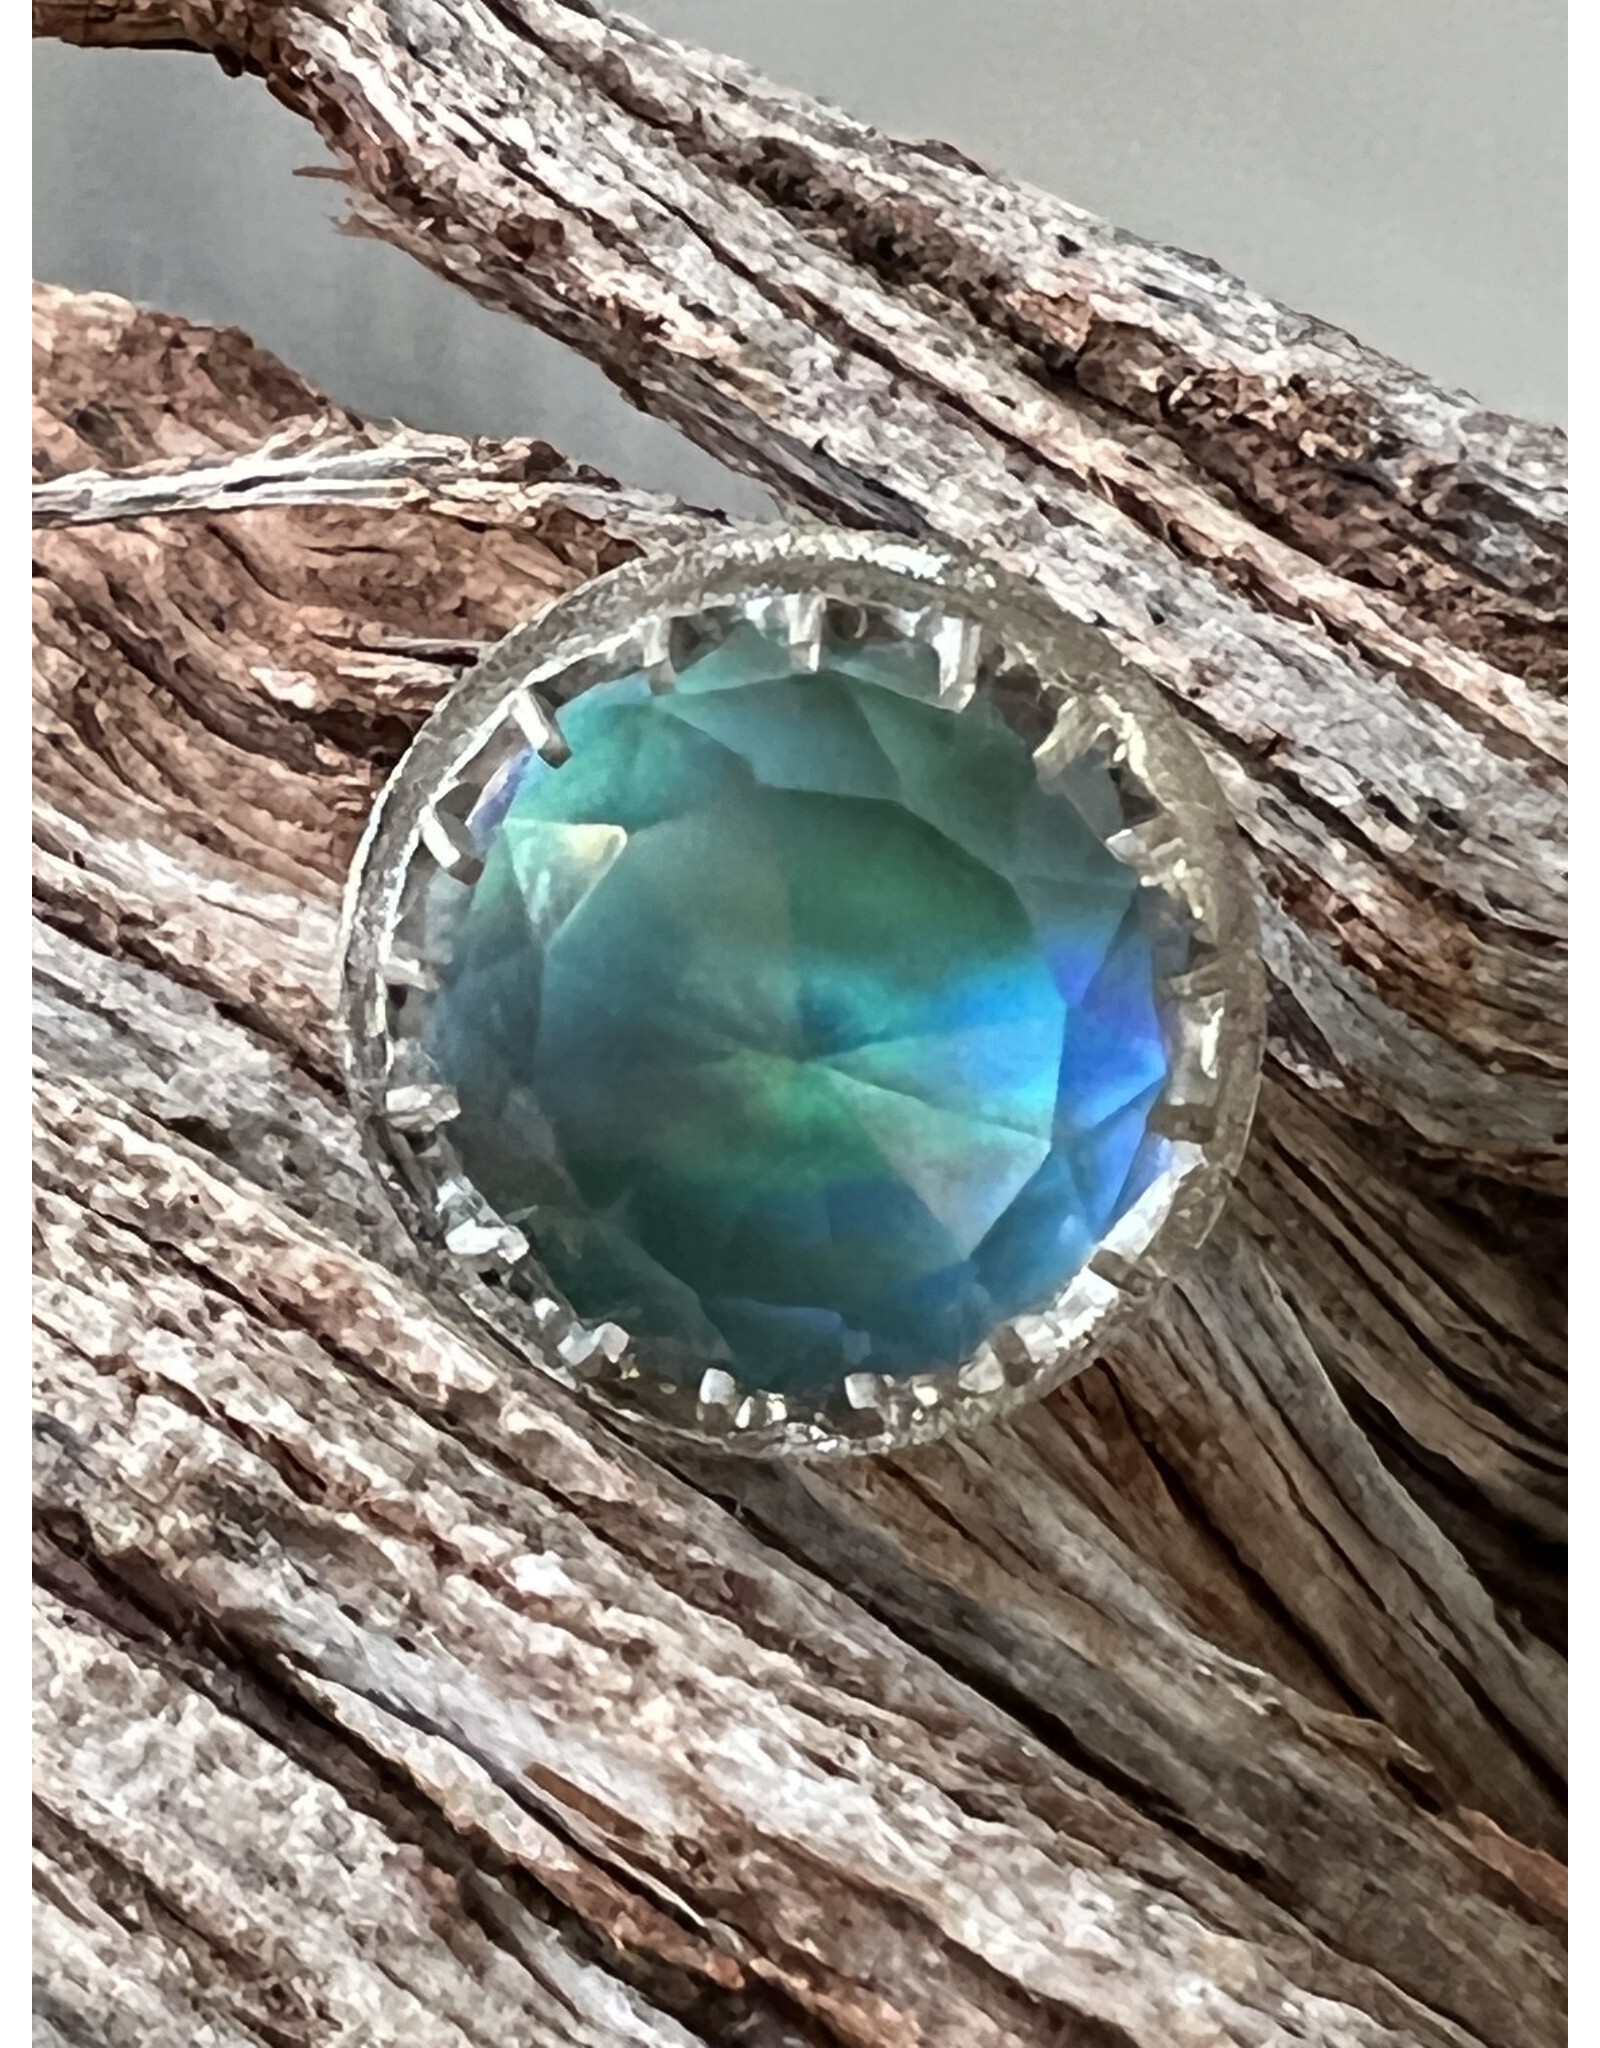 Annette Colby - Jeweler Nova Opal Quartz Globe Ring Size 7 - AC